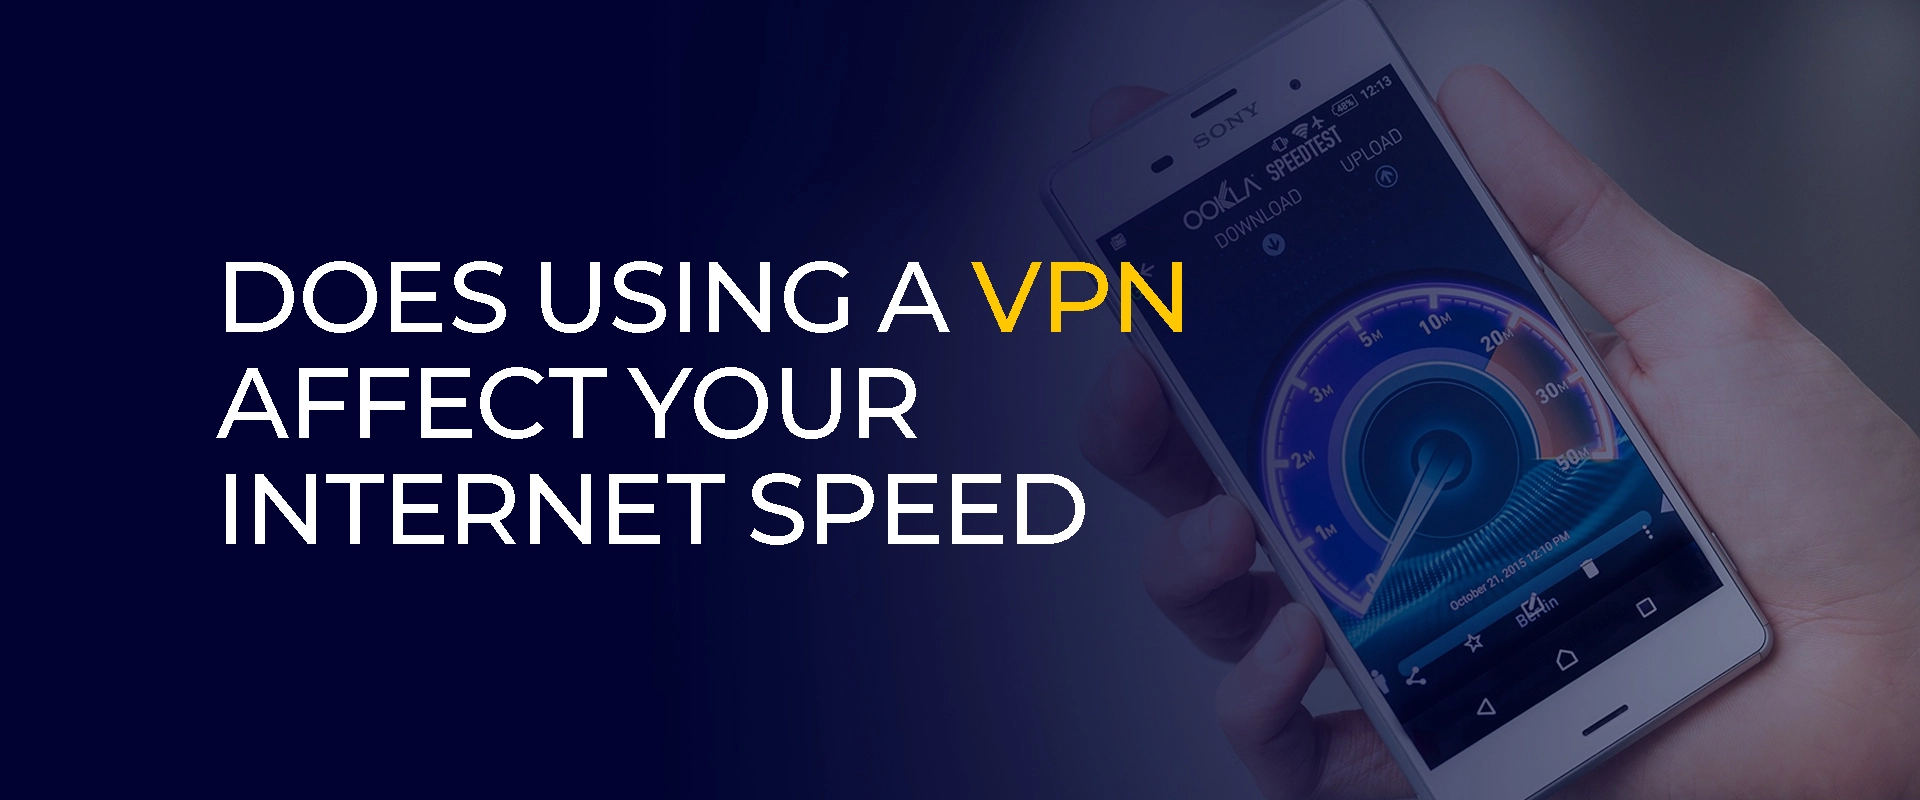 Czy korzystanie z VPN wpływa na szybkość Internetu